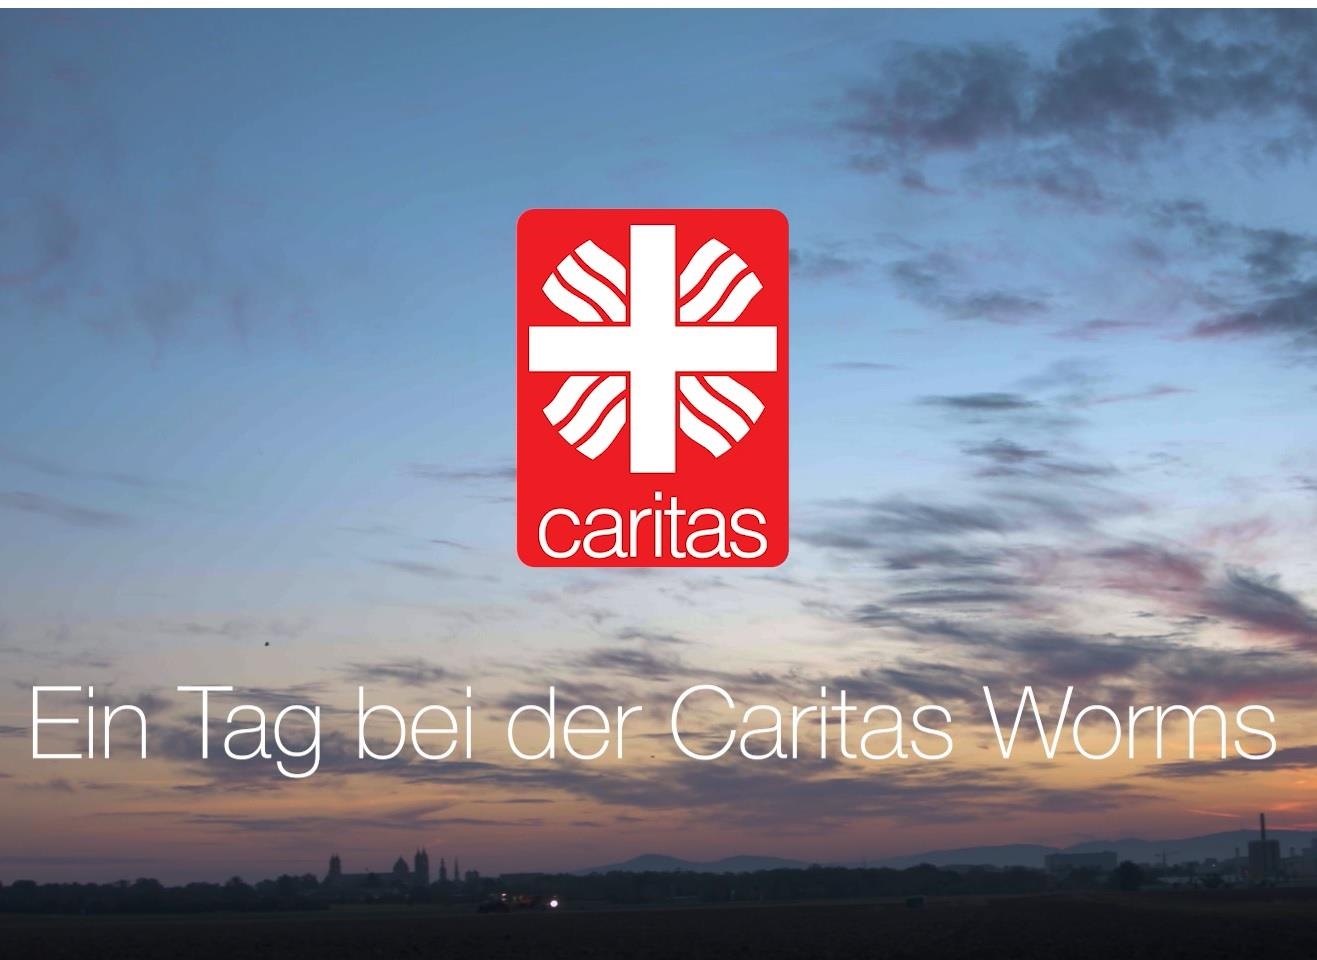 Teaserfoto zum Imagefilm "Ein Tag bei der Caritas in Worms"